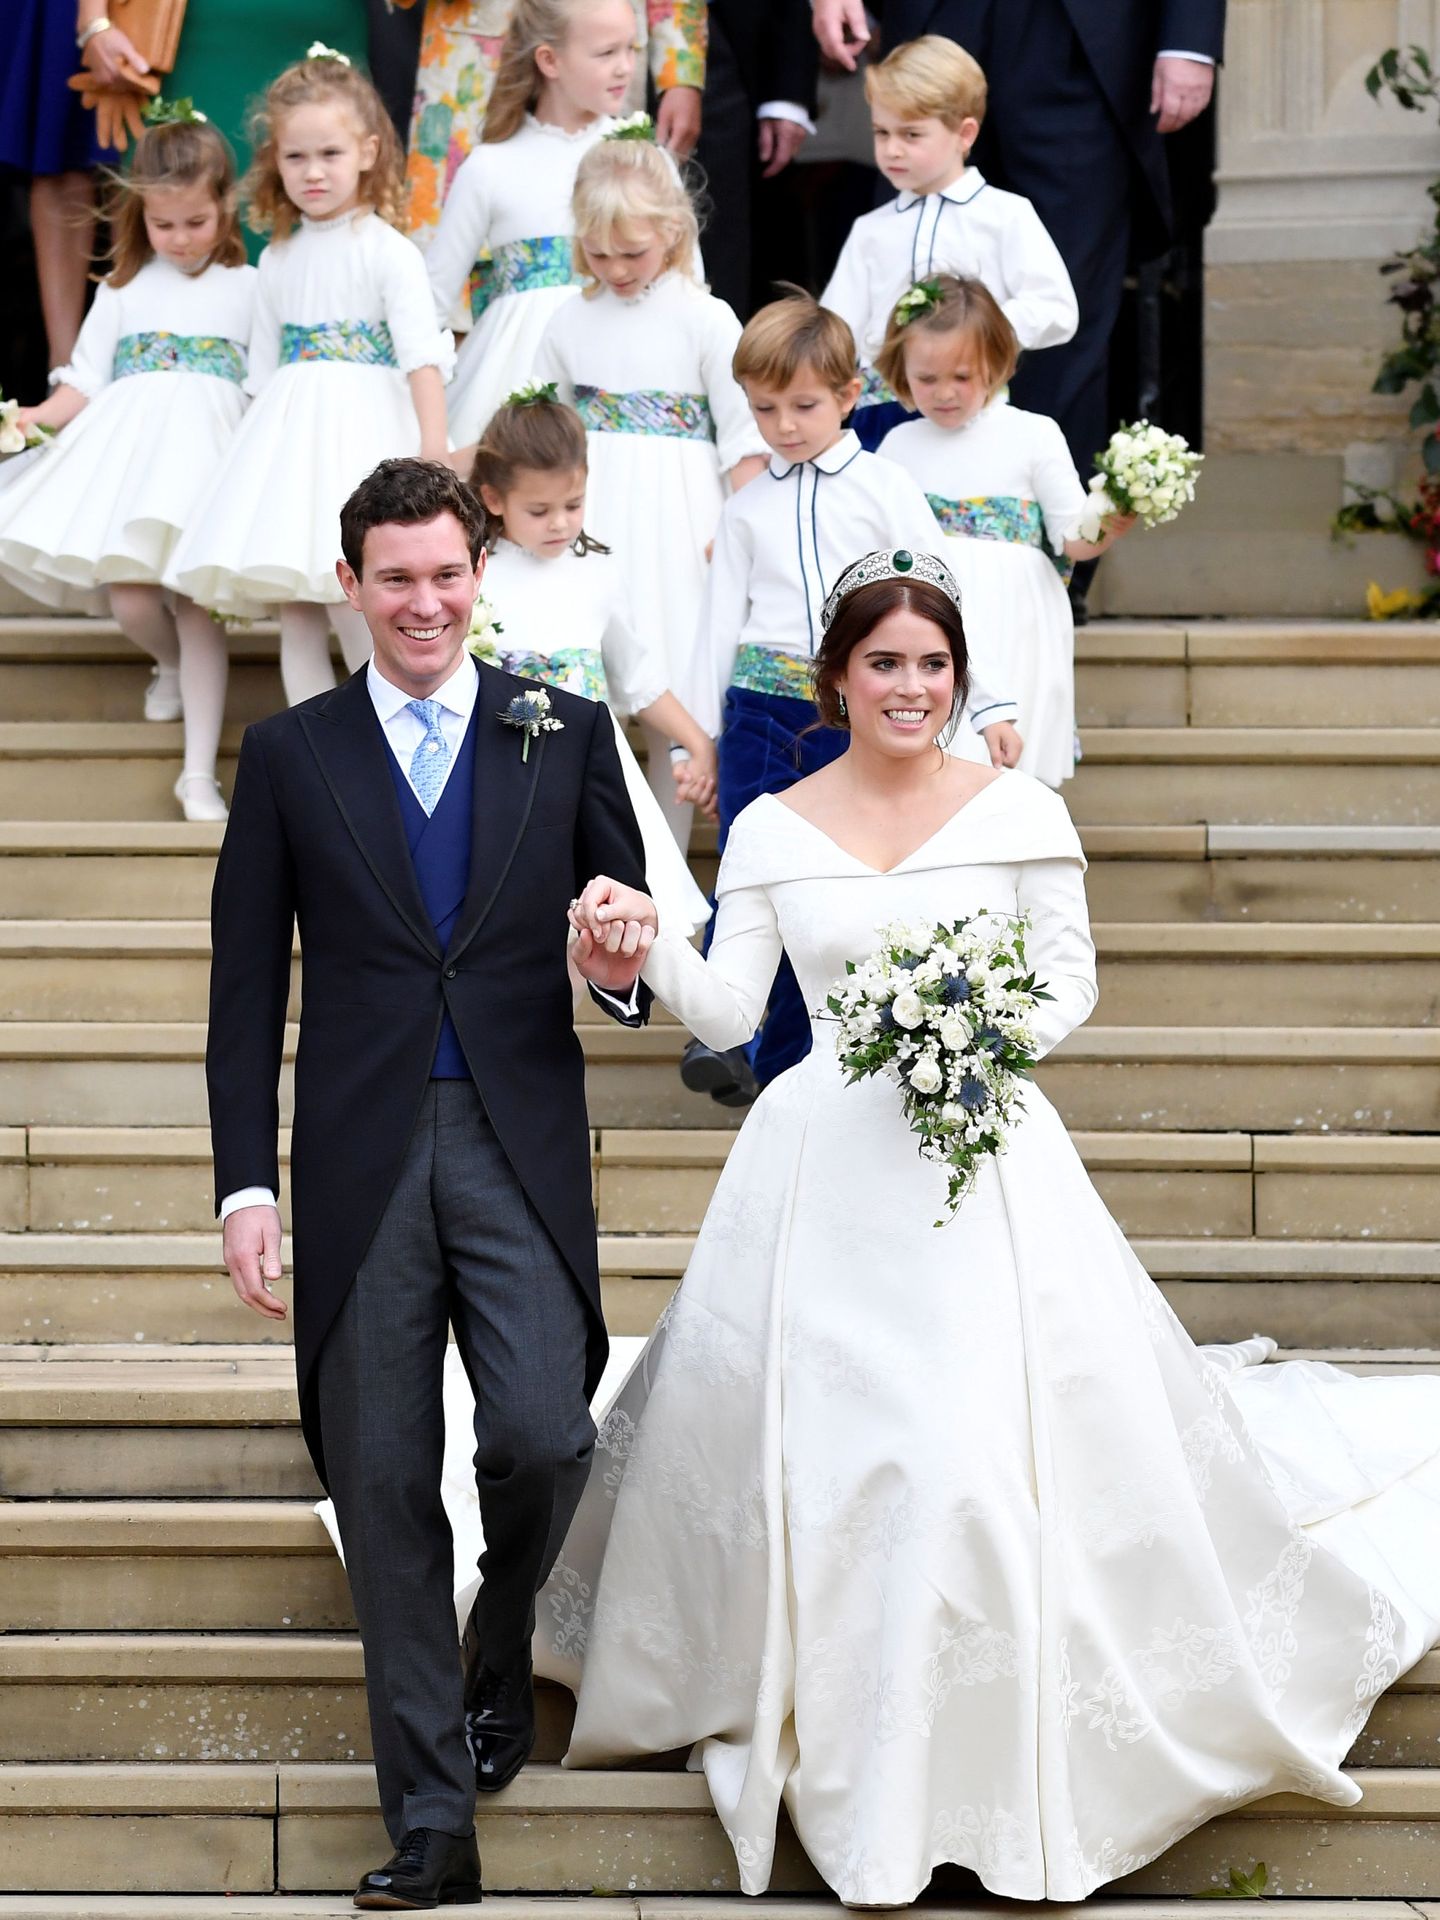 La boda de Eugenia y Jack Brooksbank. (Reuters)